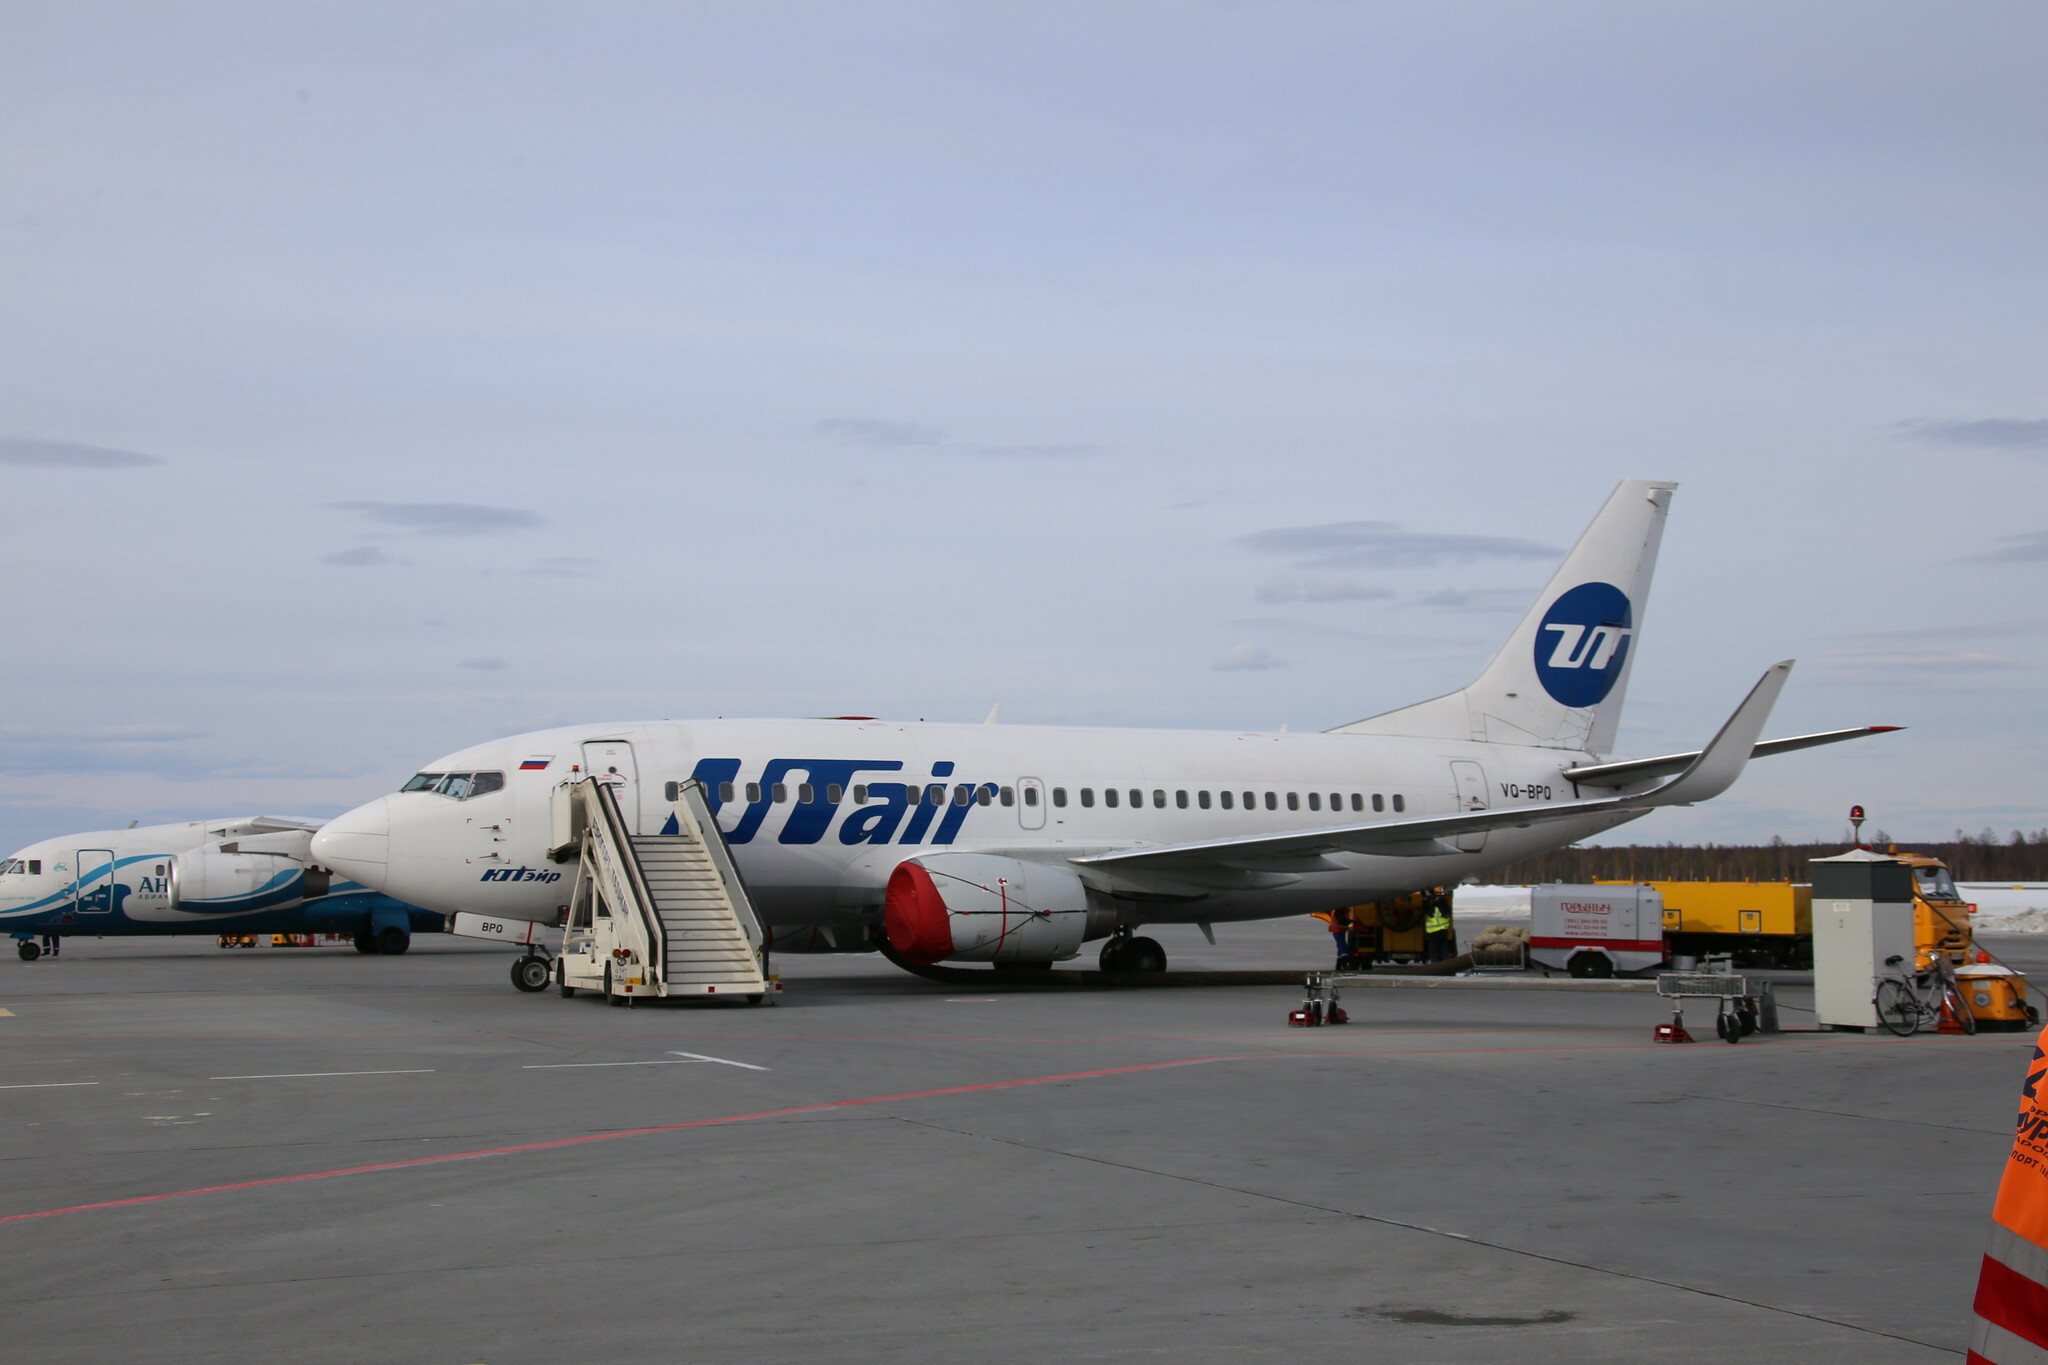 Авиакомпания Utair запустила новые рейсы в зимний период